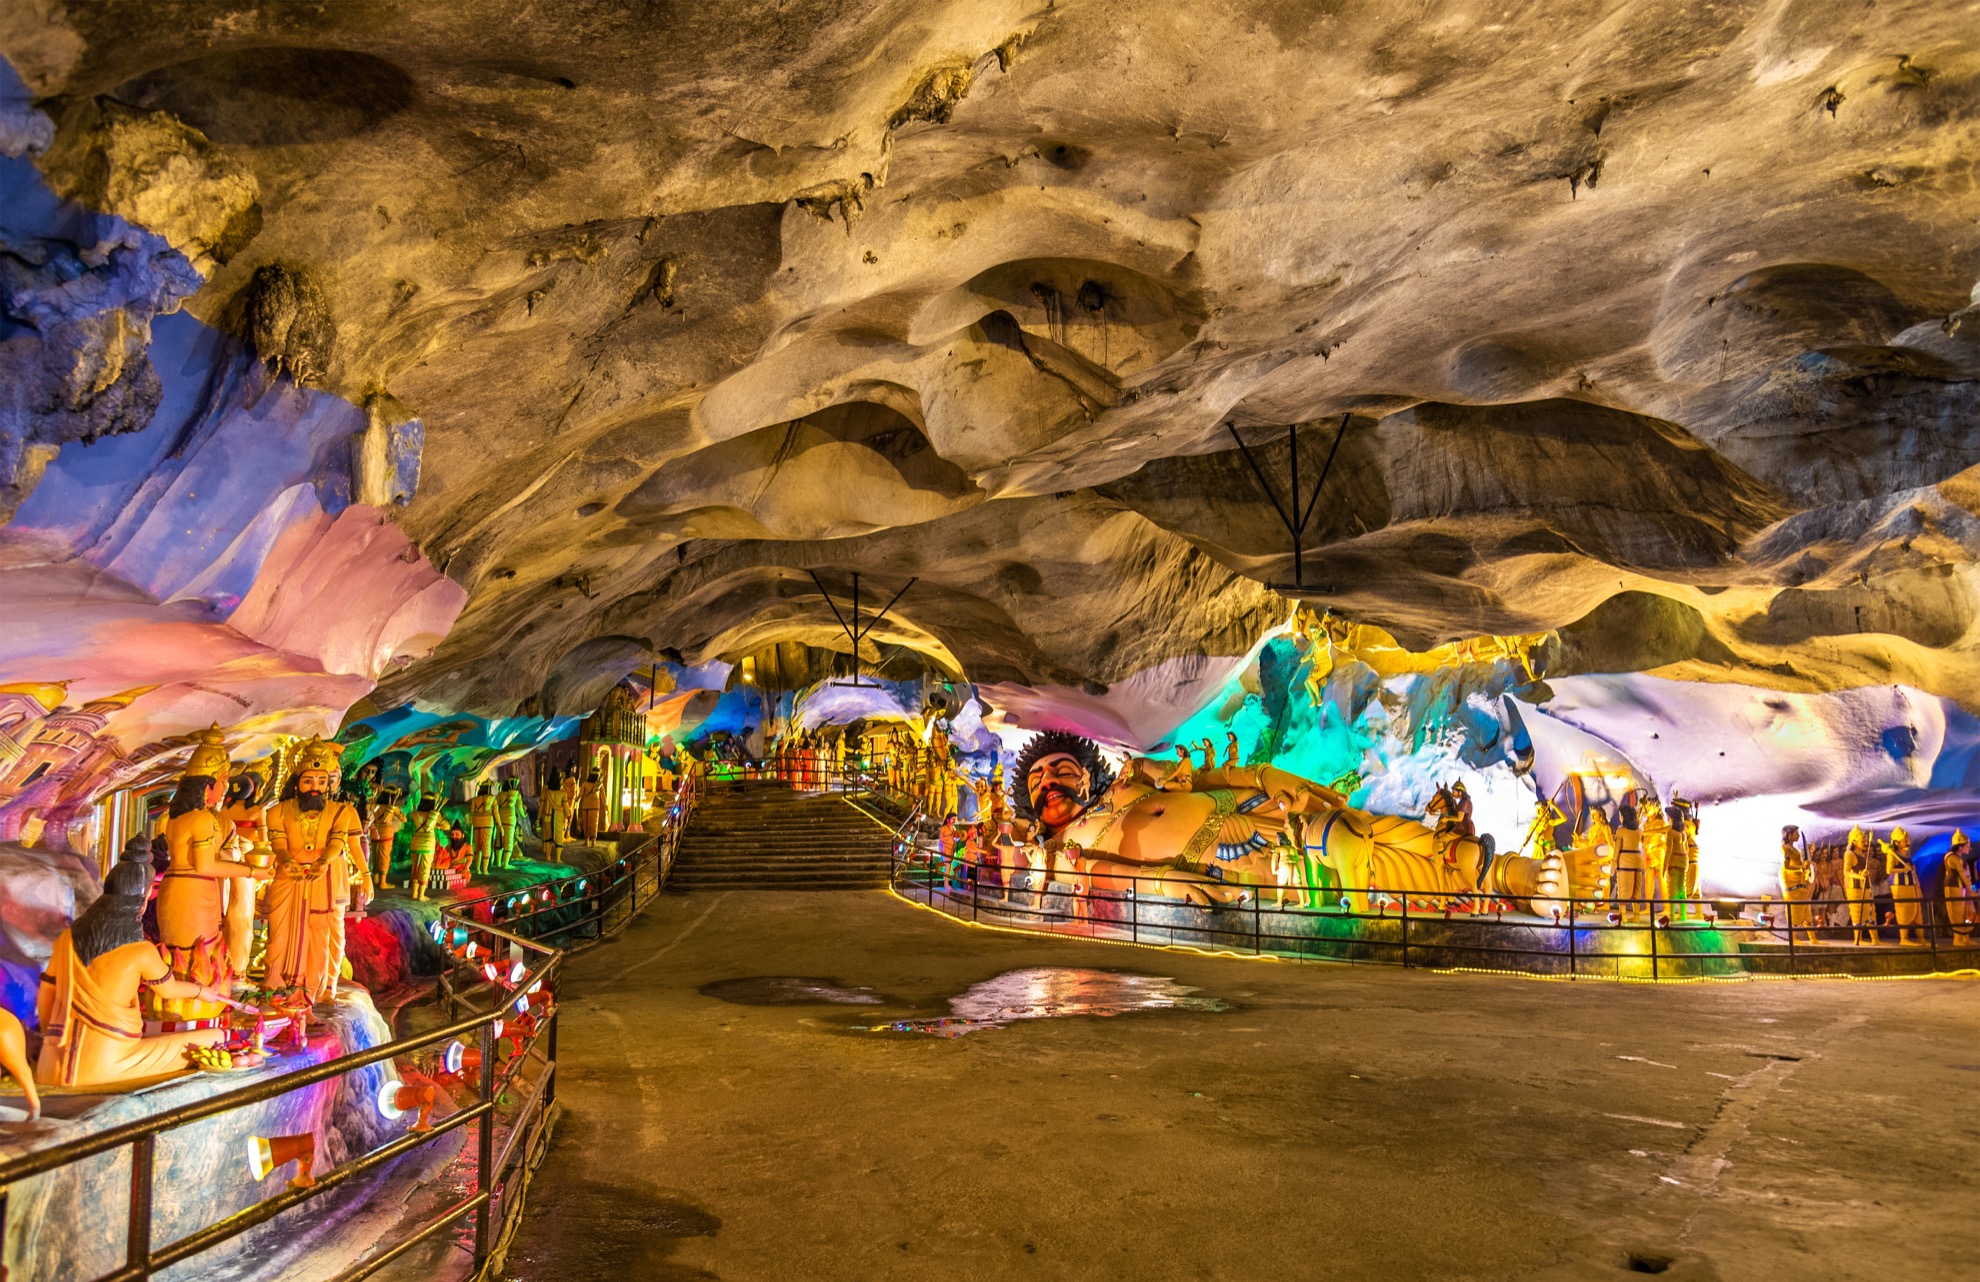 Las cuevas de Batu en Malasia podrían ser el lugar más colorido que hayas visitado - 21